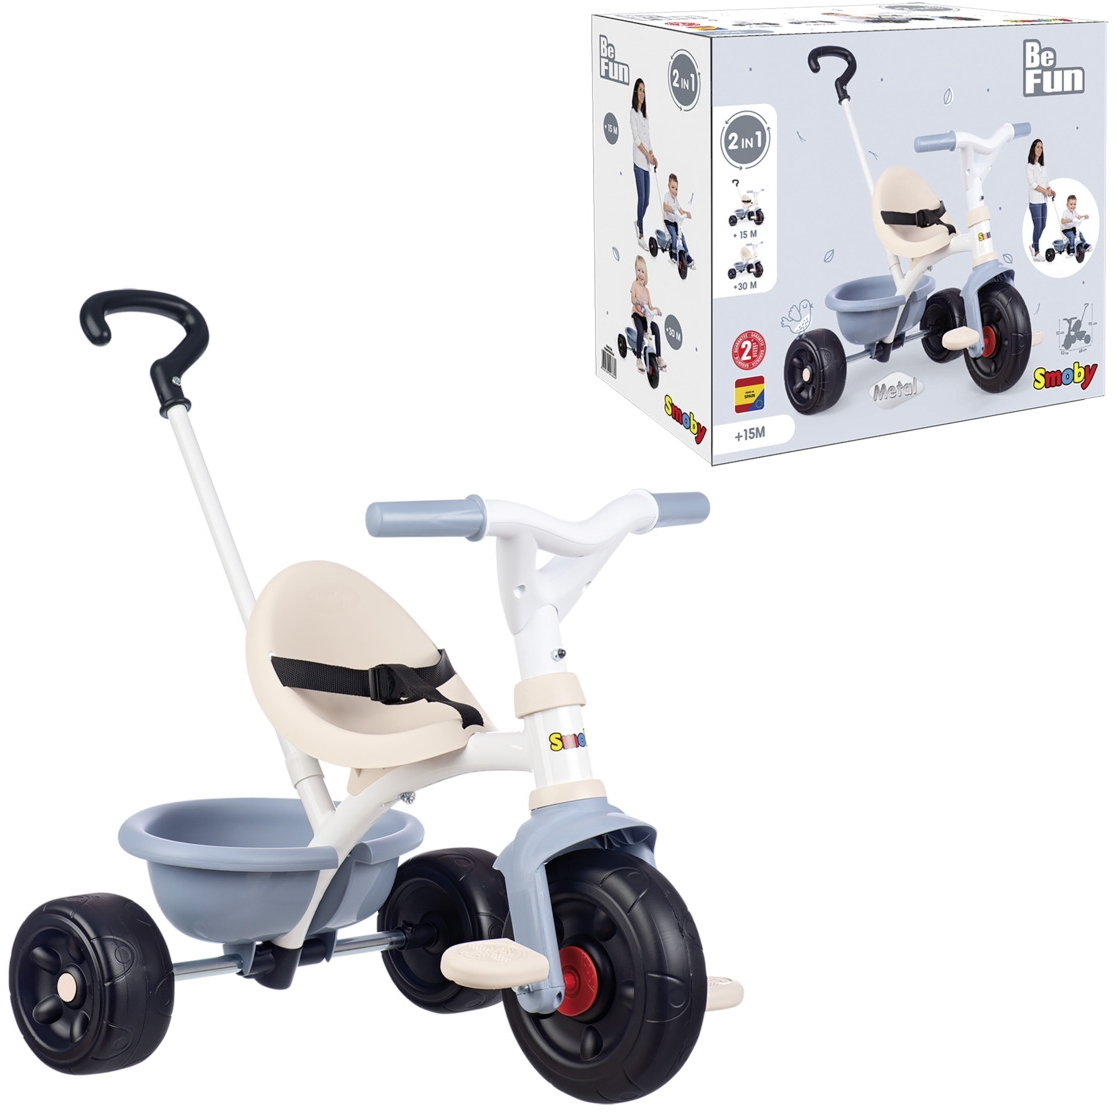 Spielwaren Express - Smoby Outdoor Spielzeug Fahrzeug Dreirad Be Fun blau  7600740336 | Kinderfahrzeuge